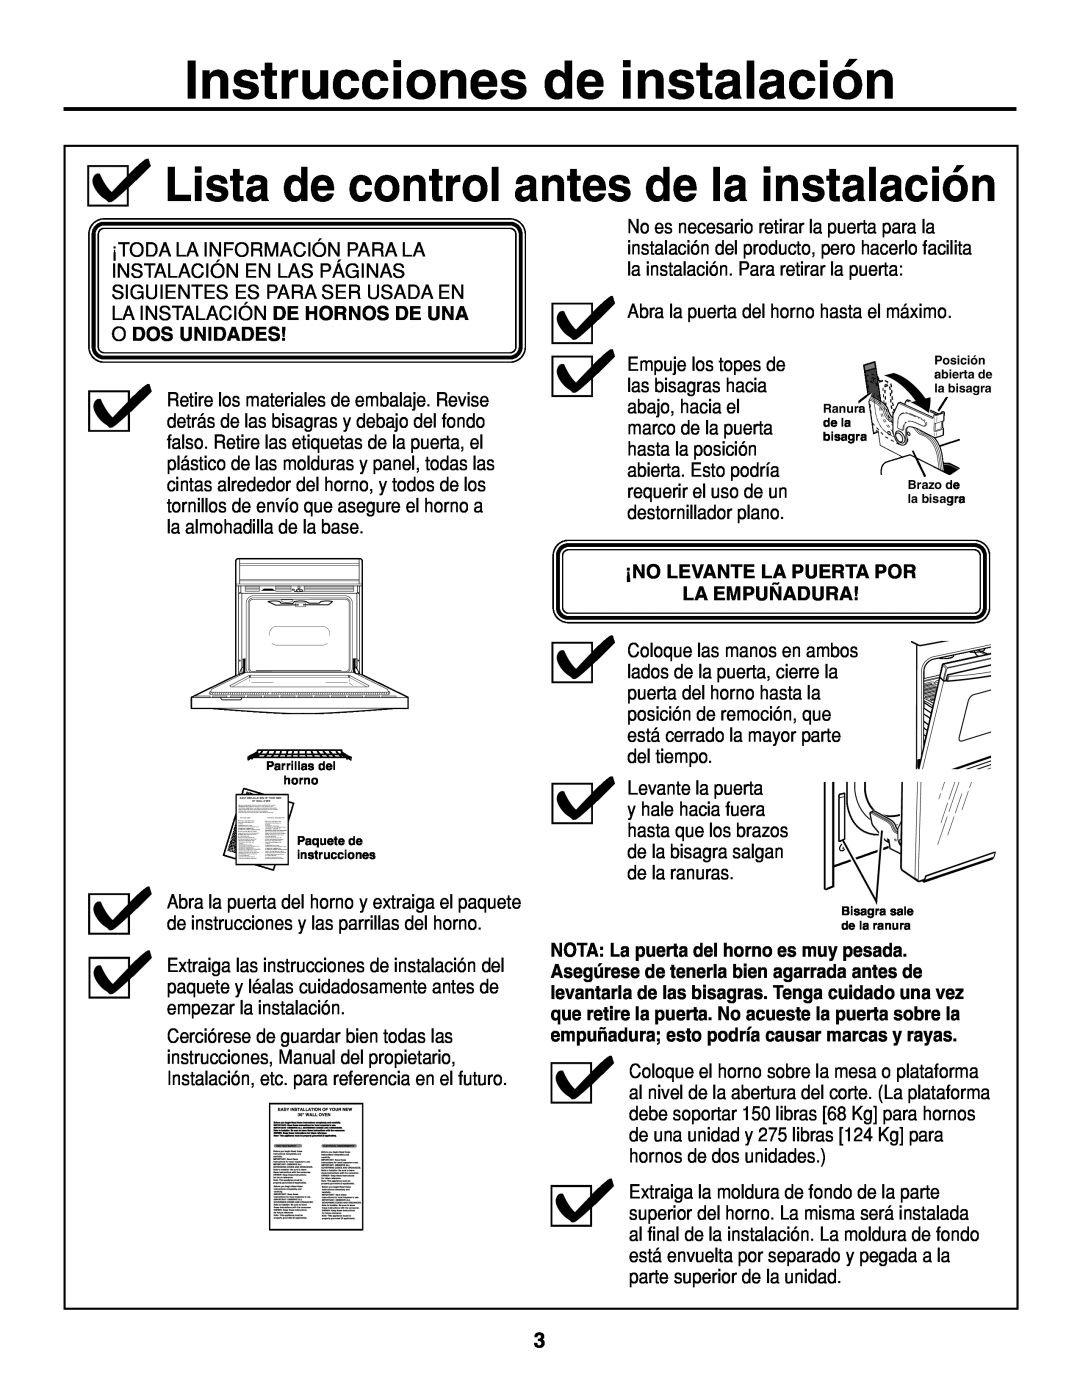 GE r08654v-1 installation instructions Lista de control antes de la instalación, Instrucciones de instalación 